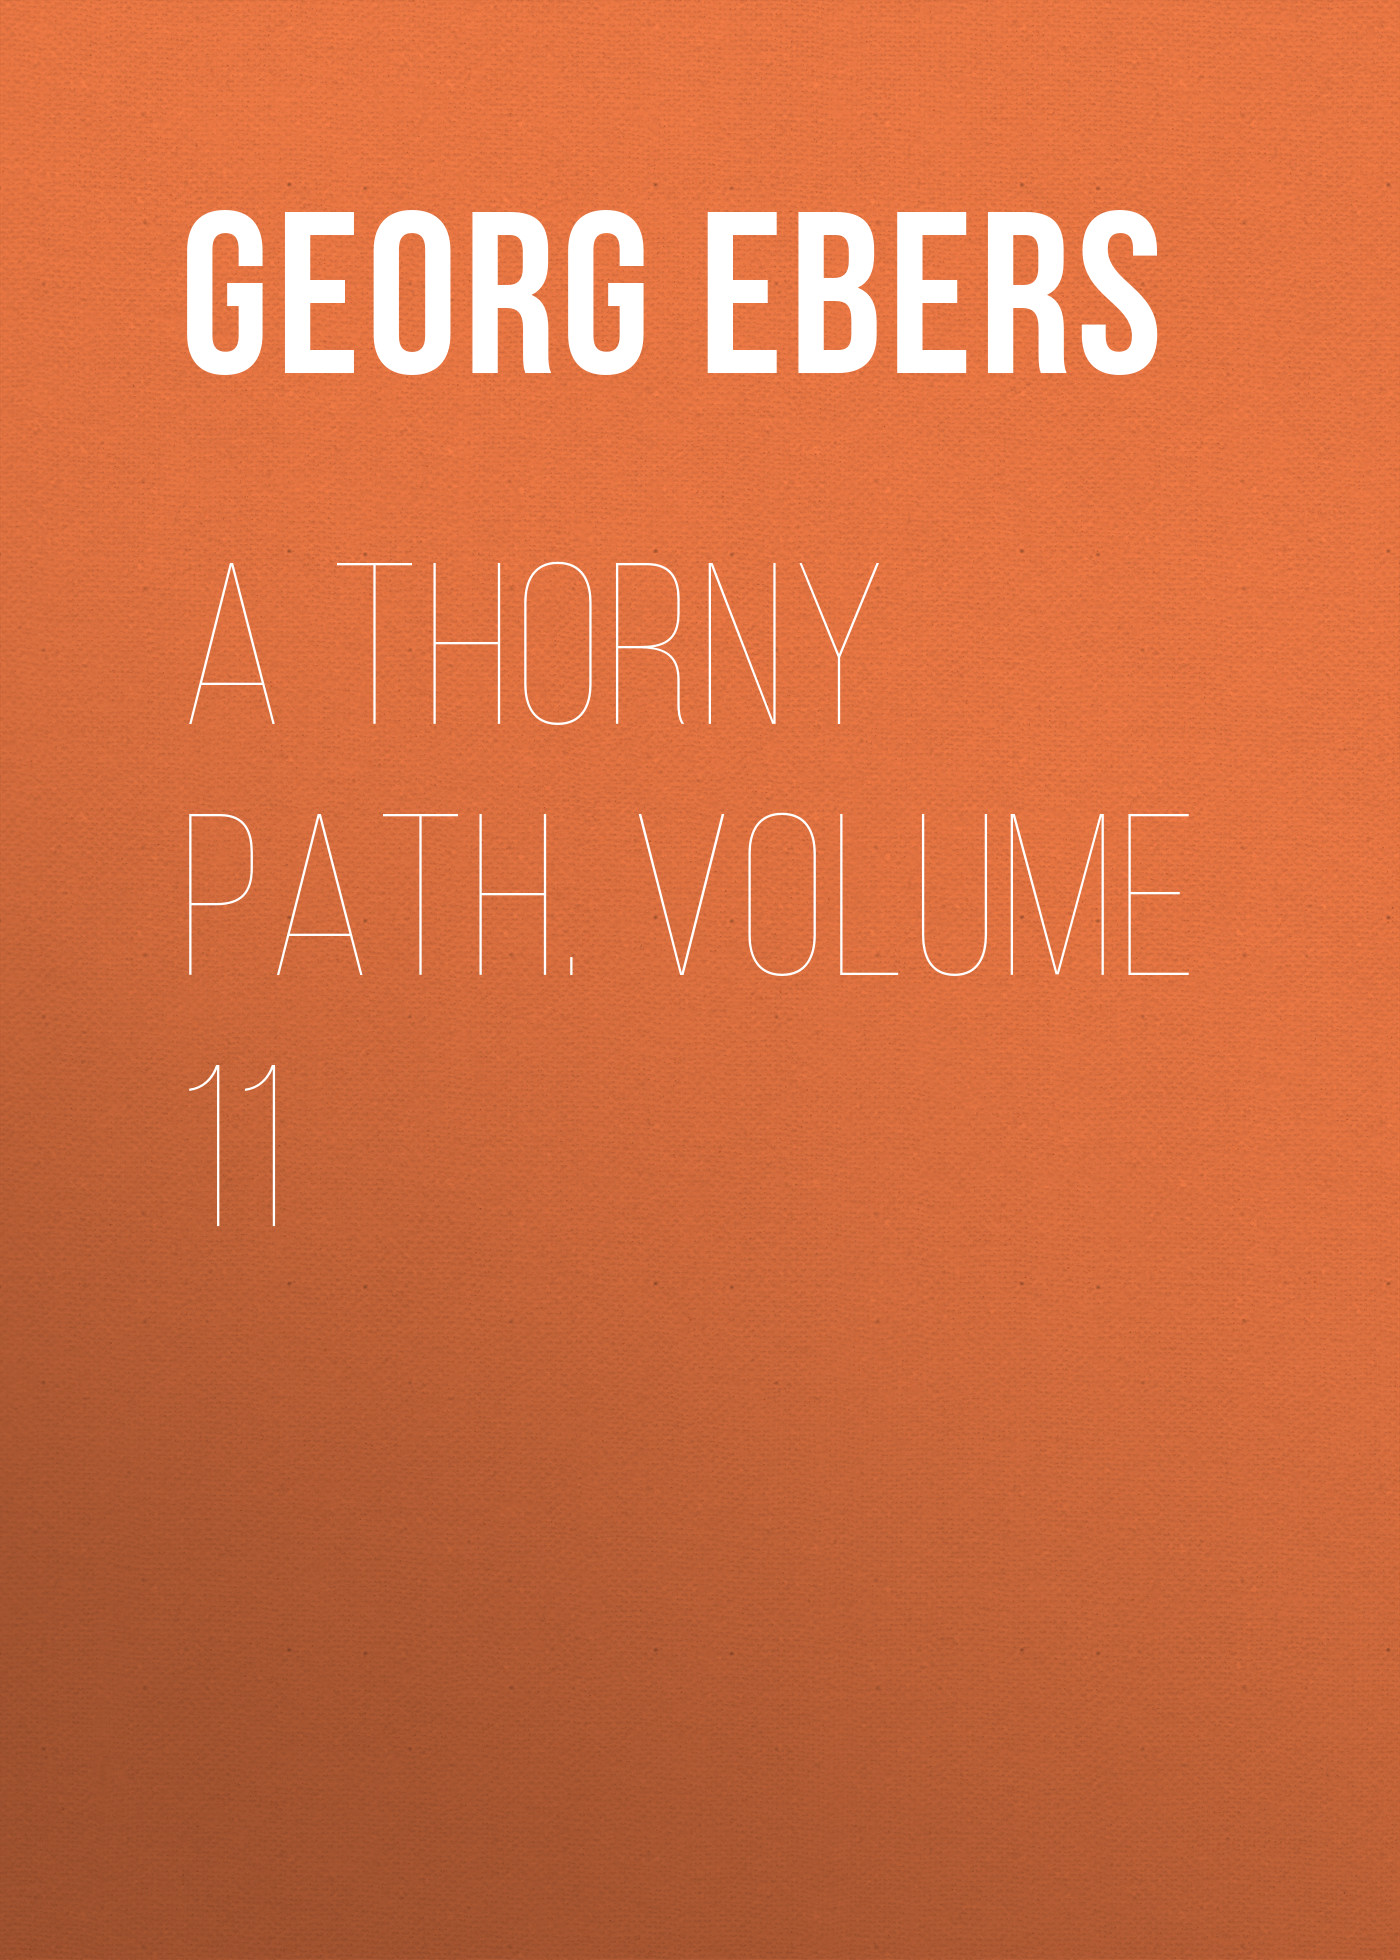 Книга A Thorny Path. Volume 11 из серии , созданная Georg Ebers, может относится к жанру Зарубежная классика, Зарубежная старинная литература. Стоимость электронной книги A Thorny Path. Volume 11 с идентификатором 42628131 составляет 0 руб.